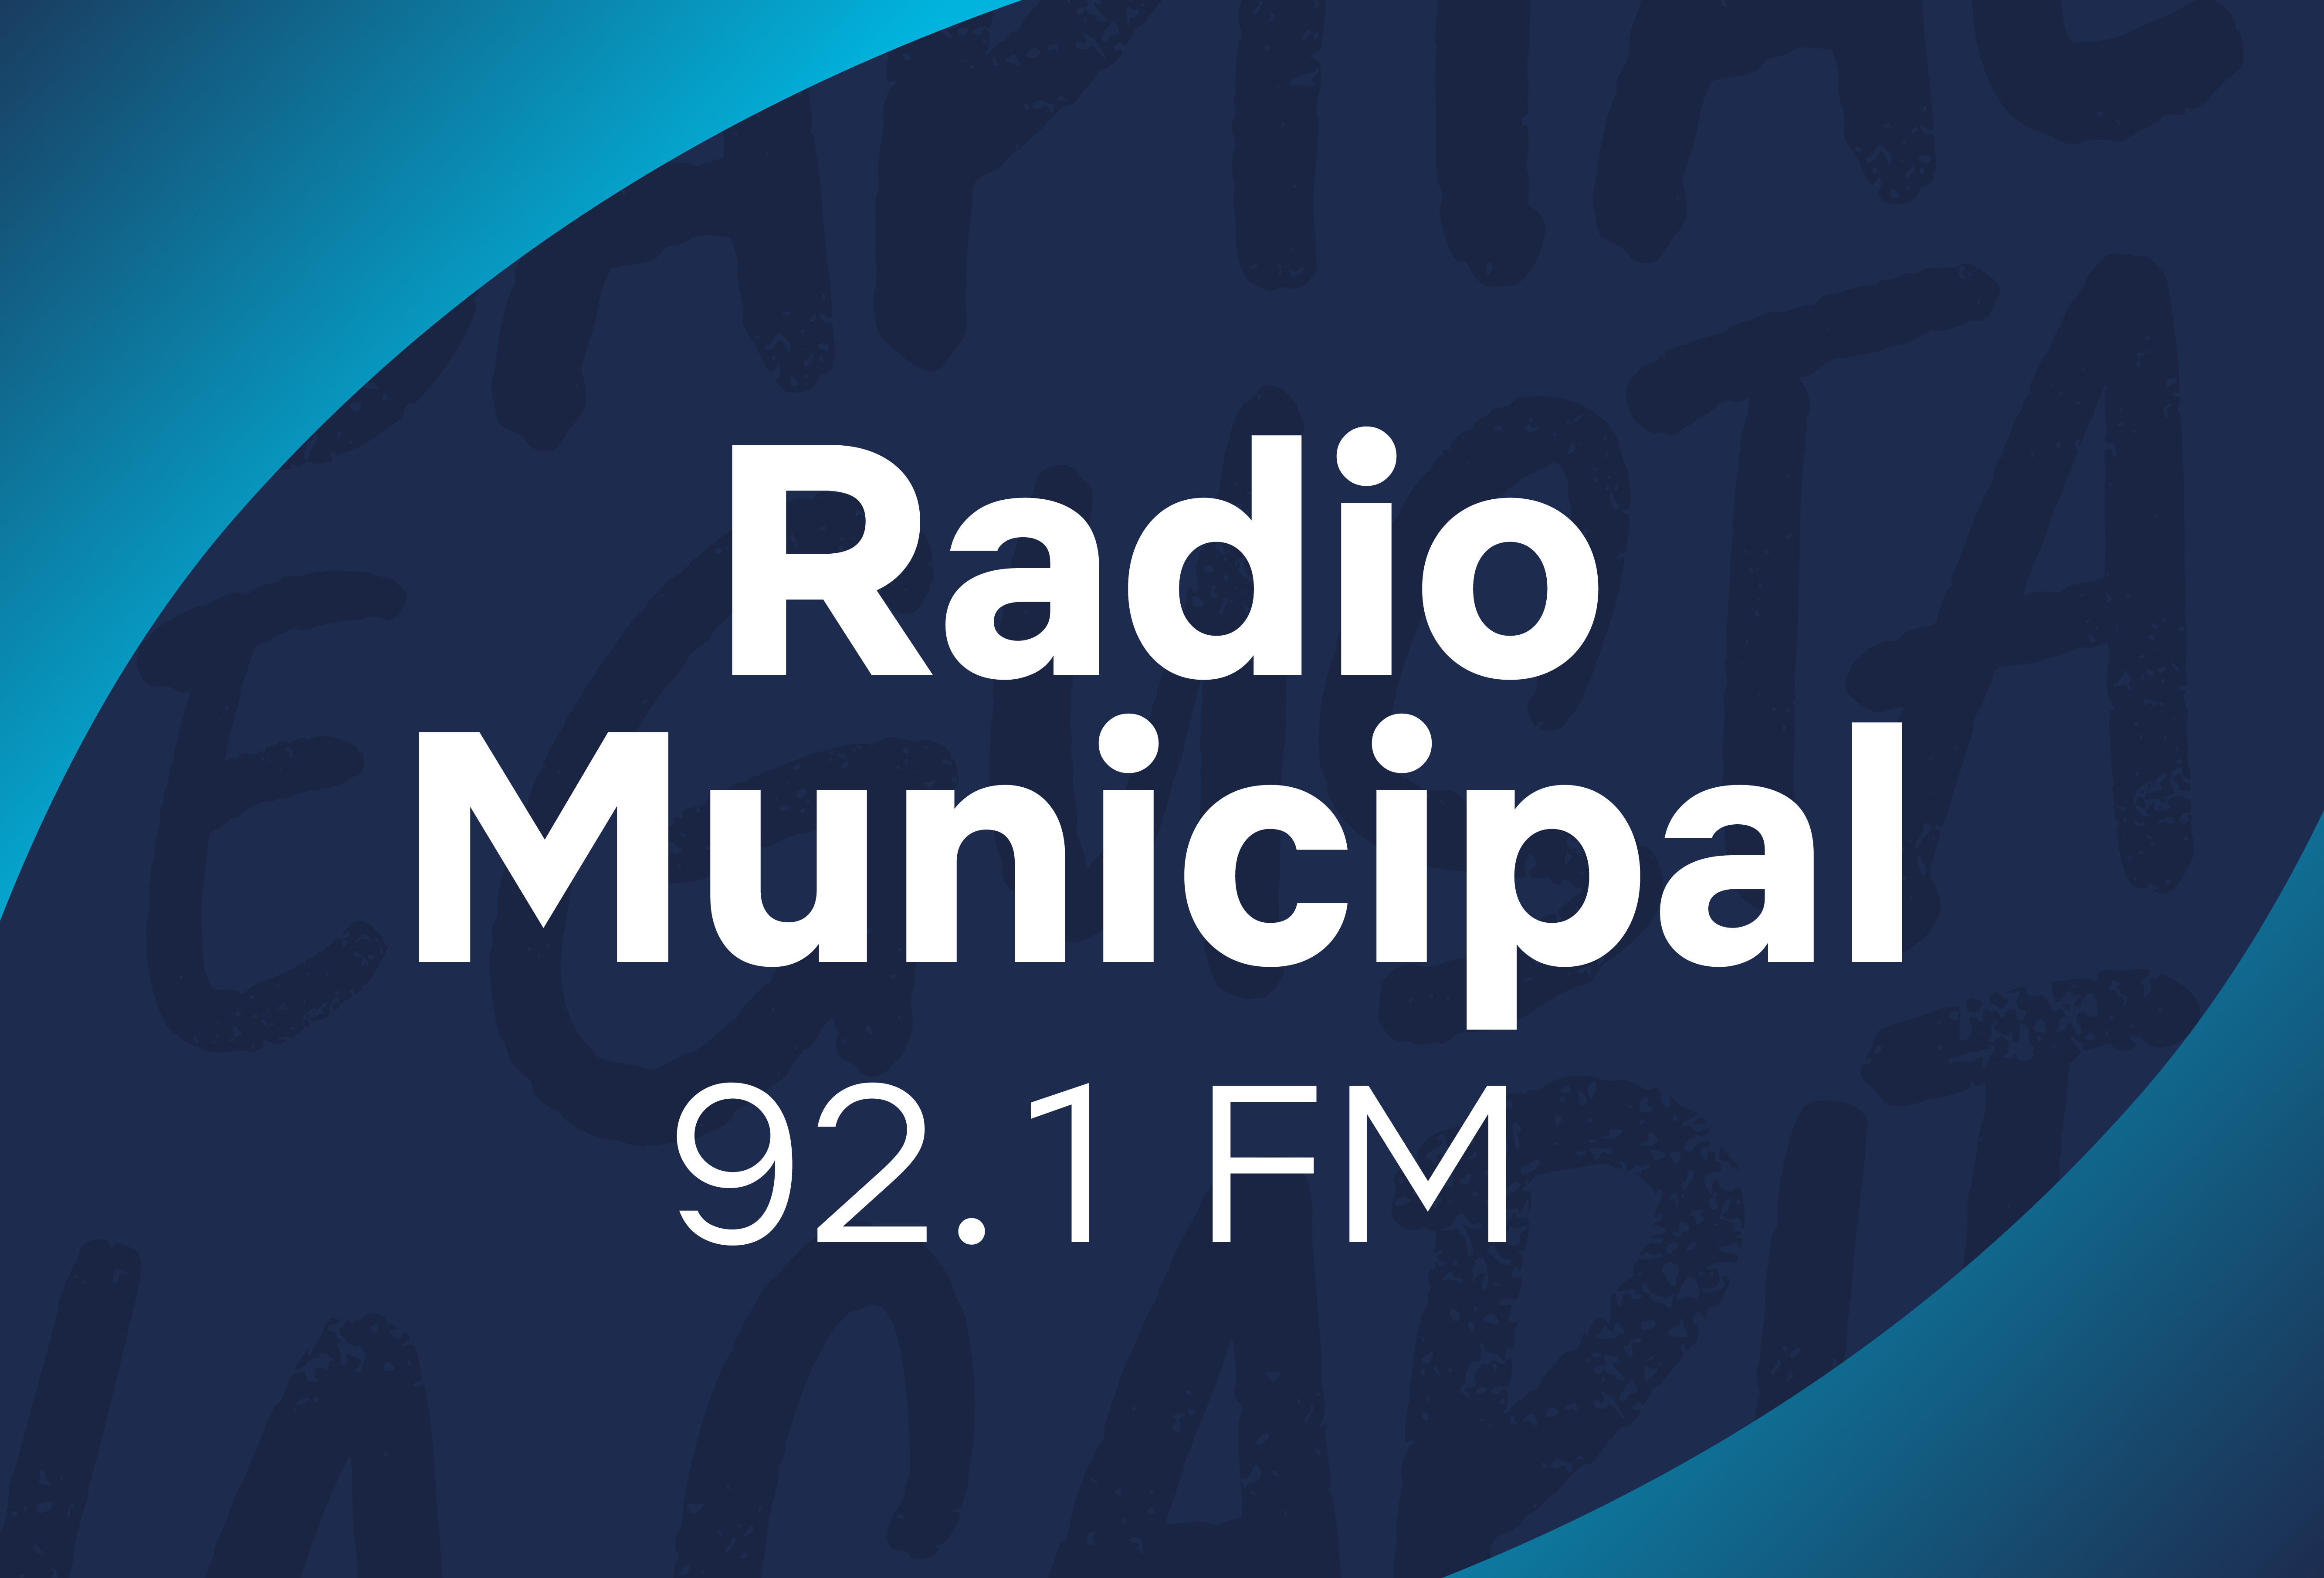 Boton radio municipal